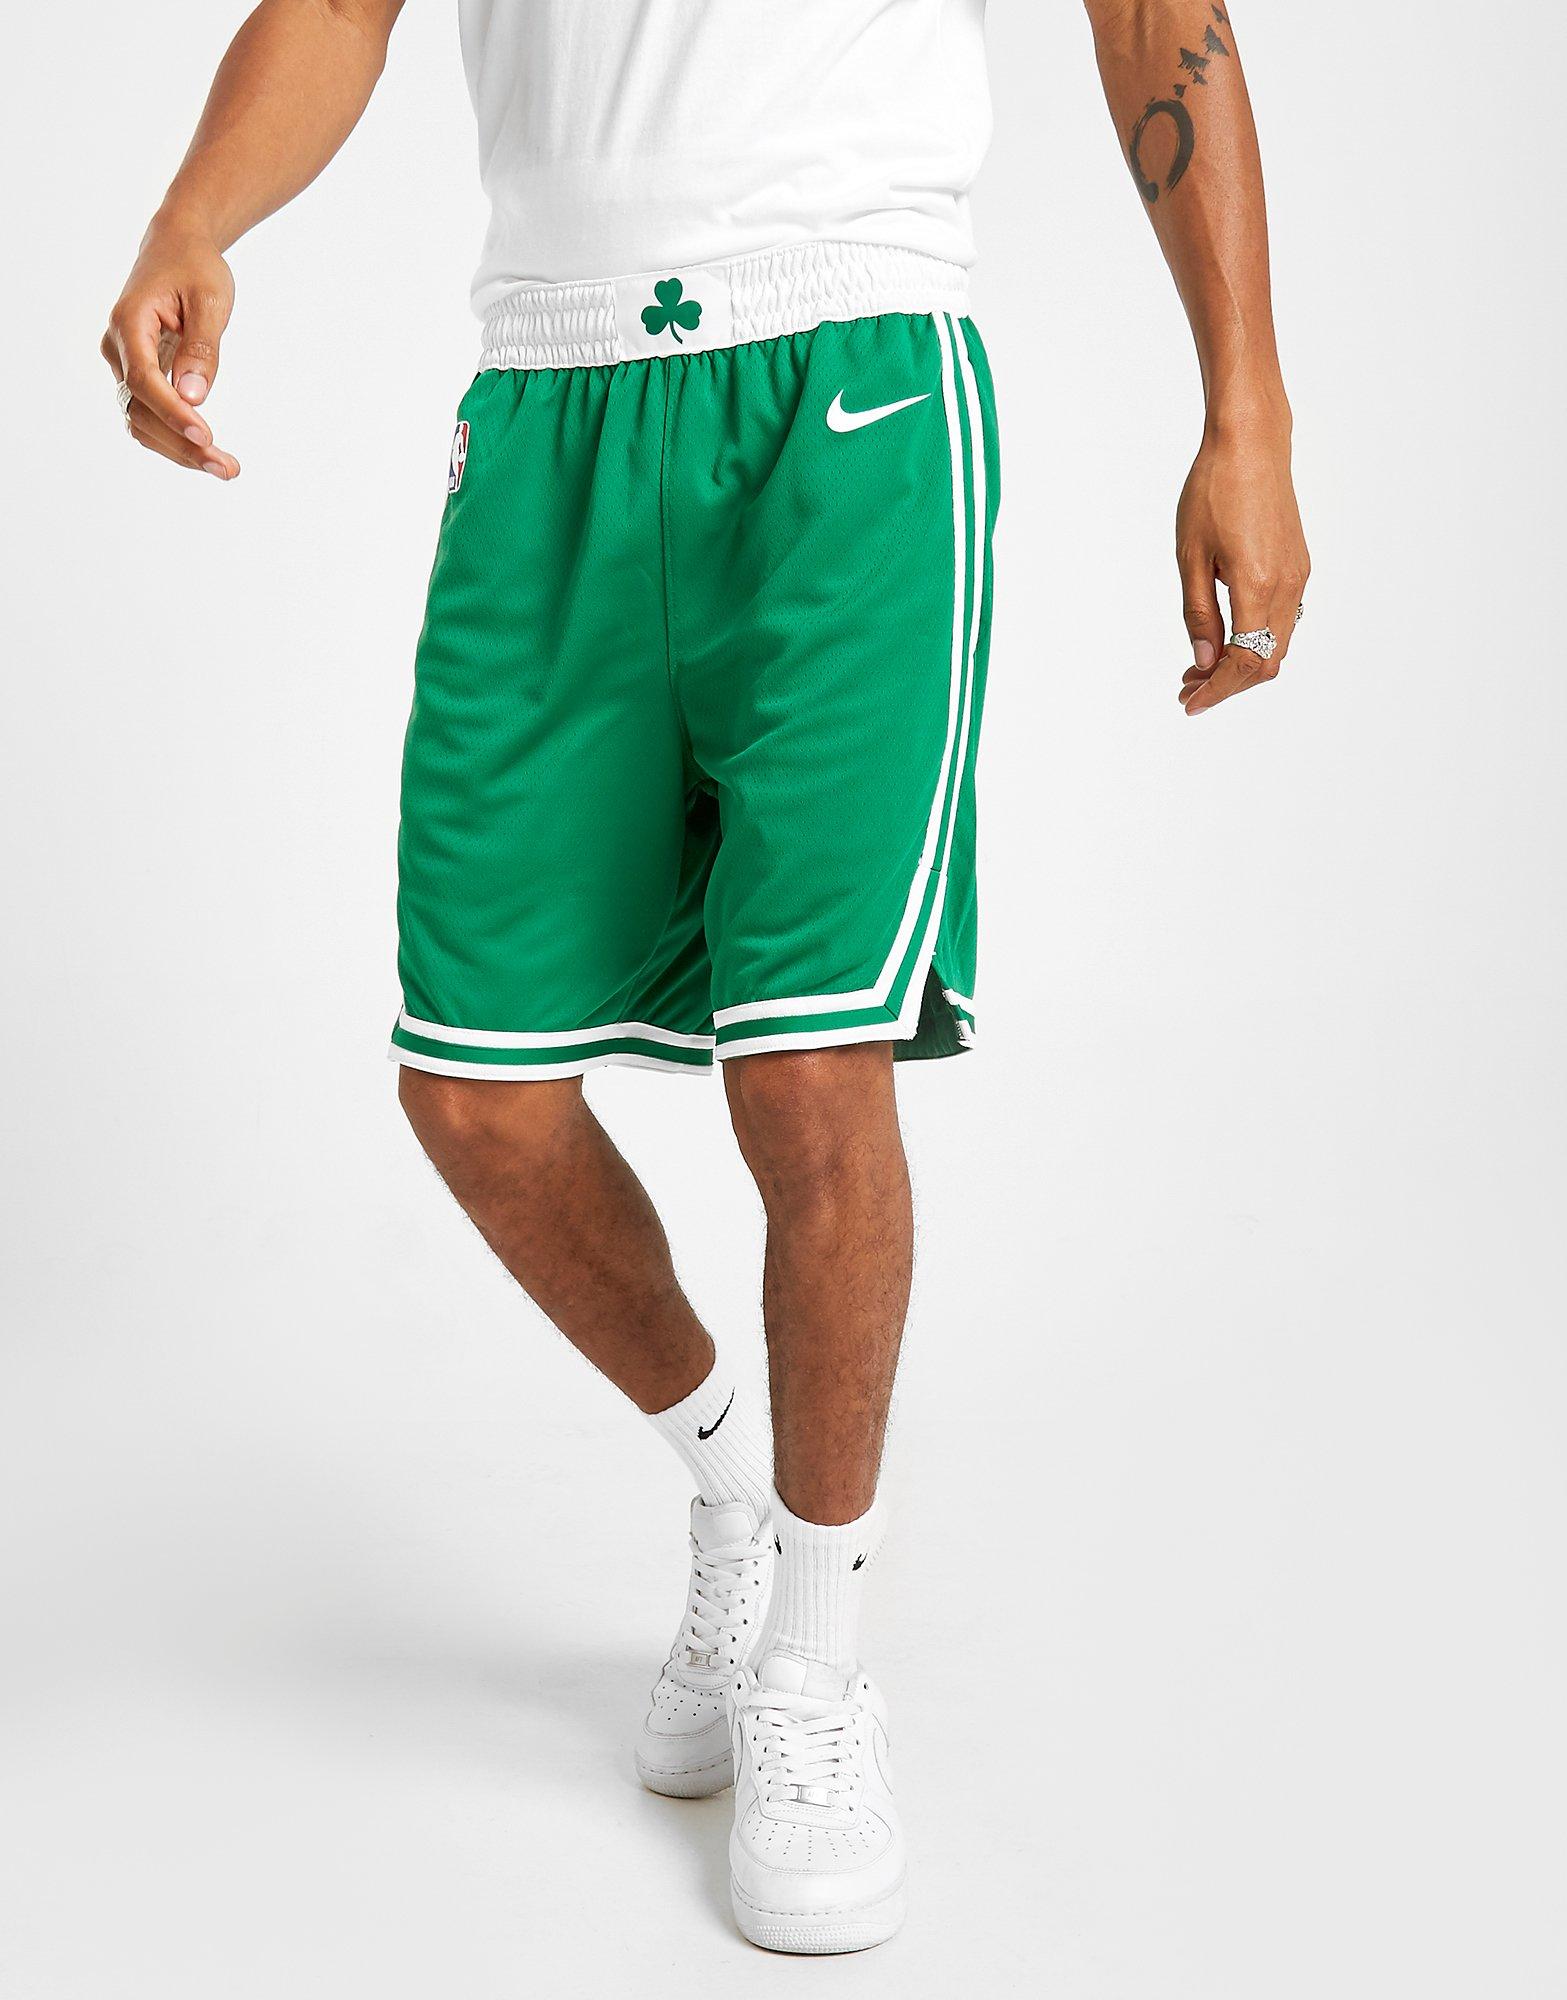 Limpiar el piso Gaviota ir de compras Nike pantalón corto NBA Boston Celtics Swingman en Verde | JD Sports España